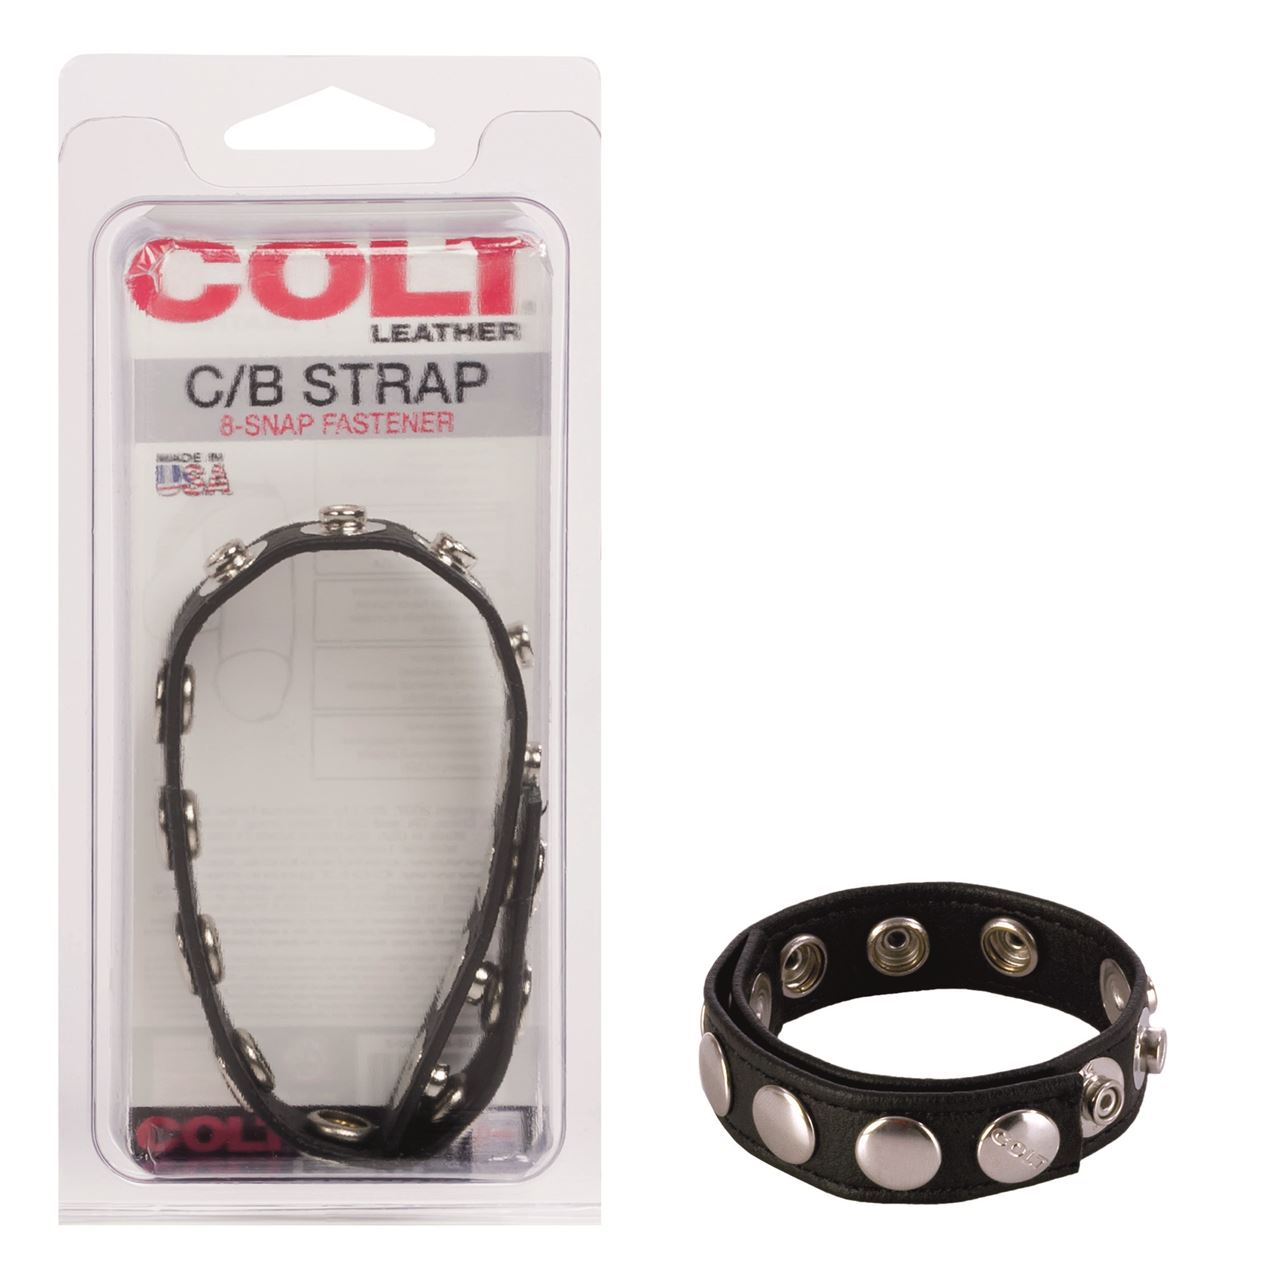 COLT-8-Snap-Fastener-Leather-Strap